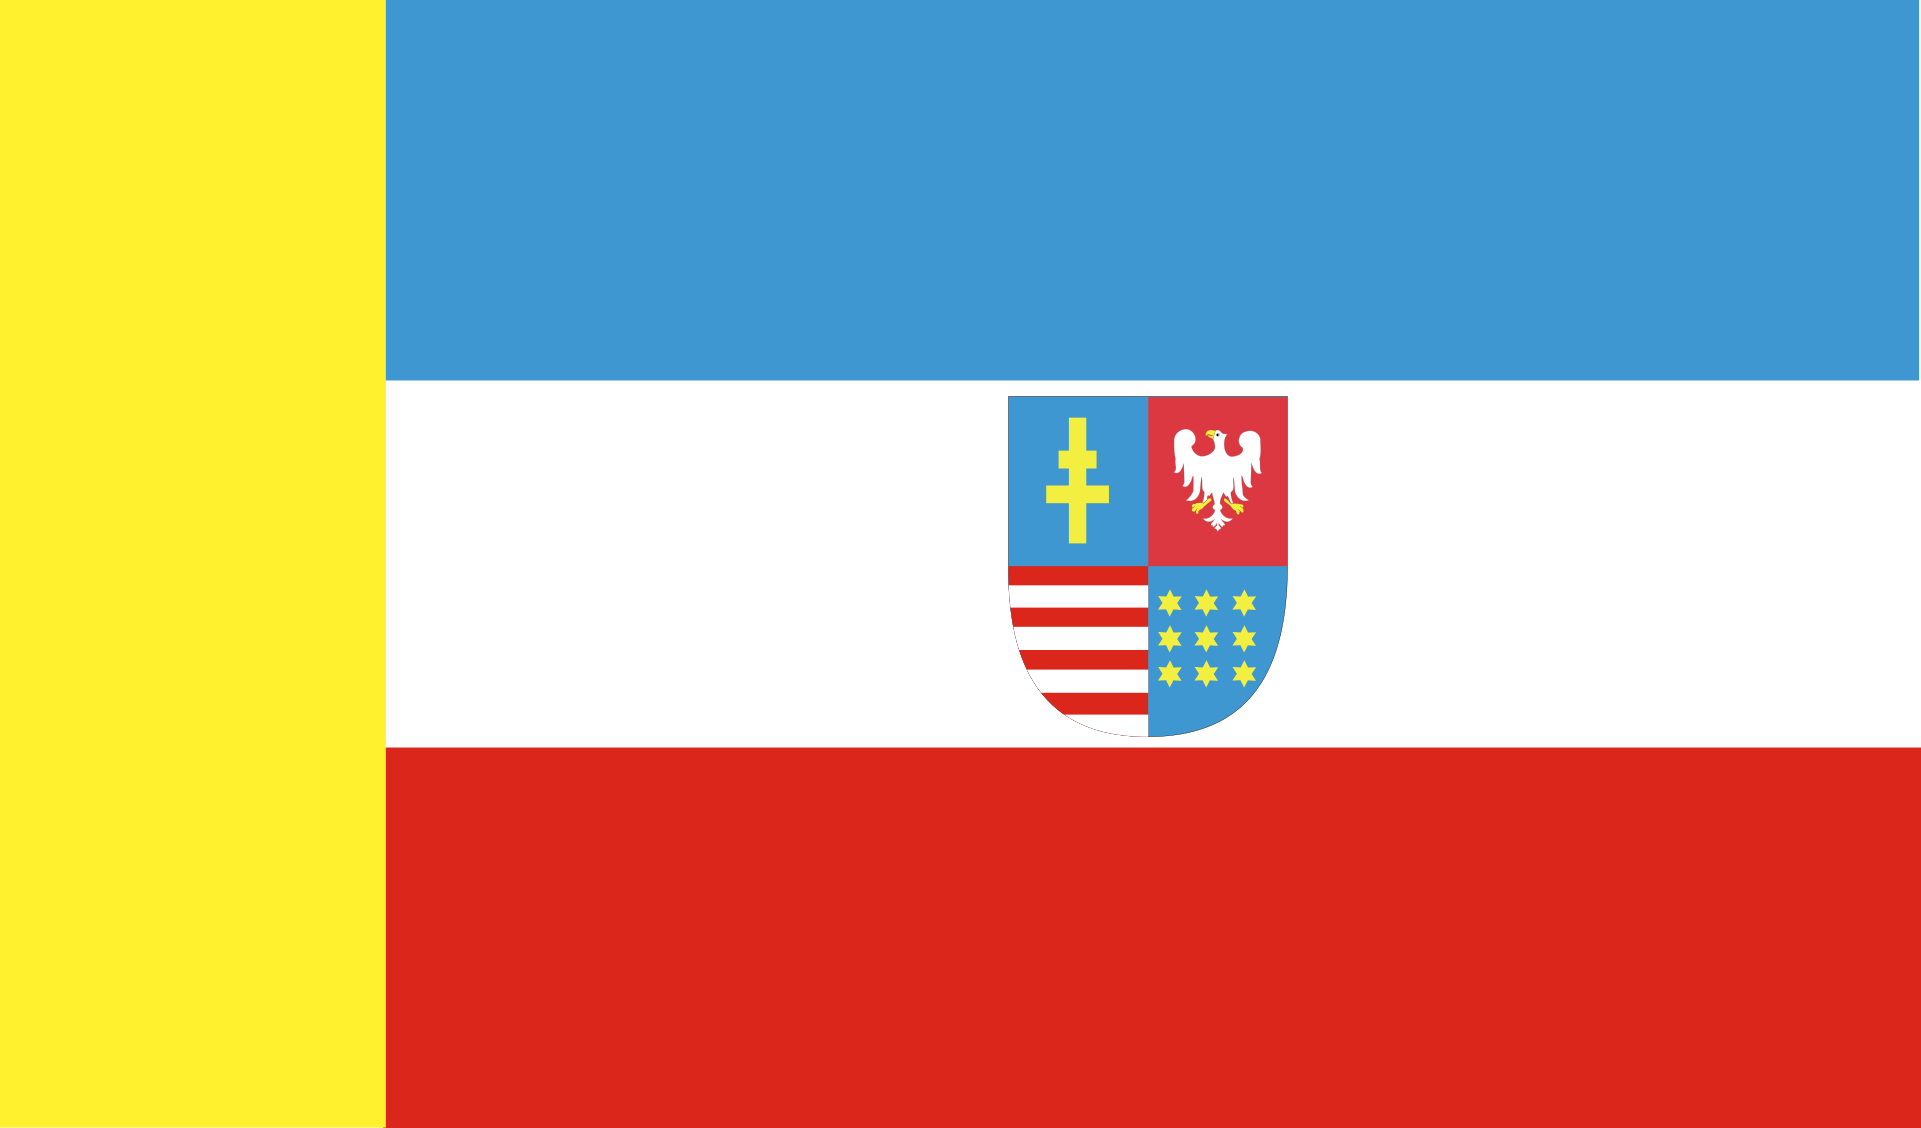 Svatokřížská vlajka | vlajka, prapor, symbol, vlaječka, obrázek | Polská vojvodství |  1921x1128 px